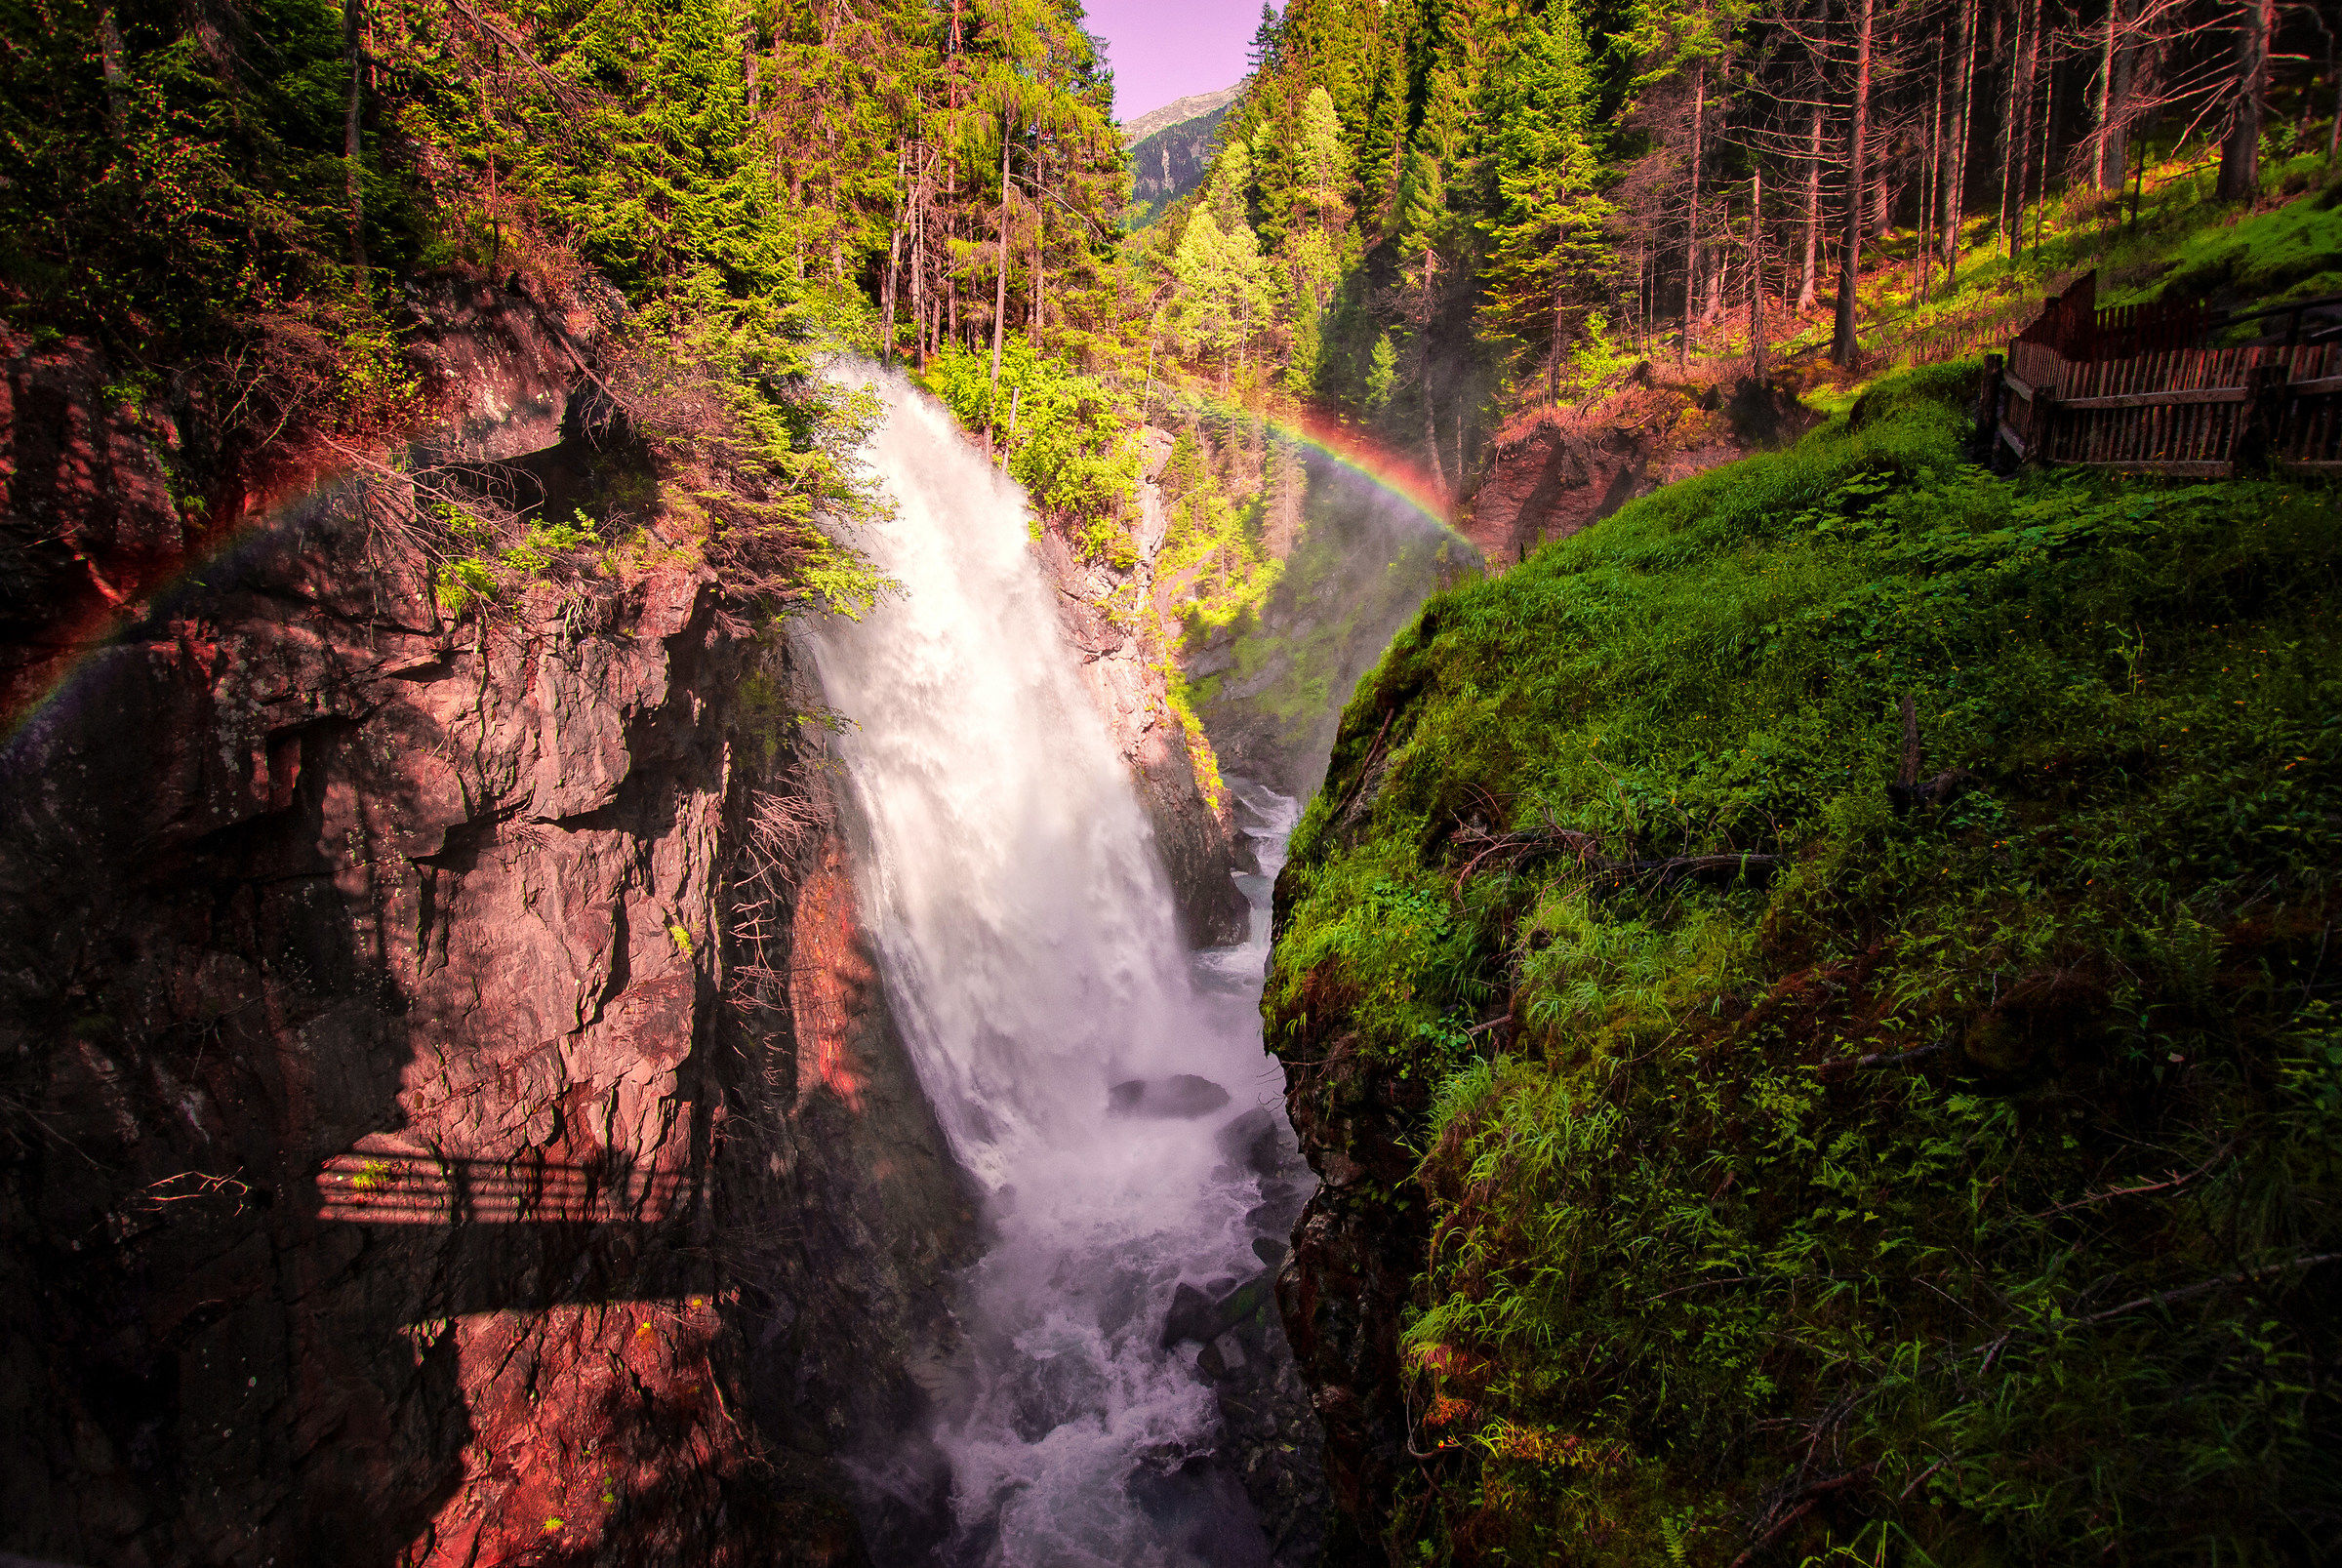 "Wasserfall"-Waterfalls of Riva...